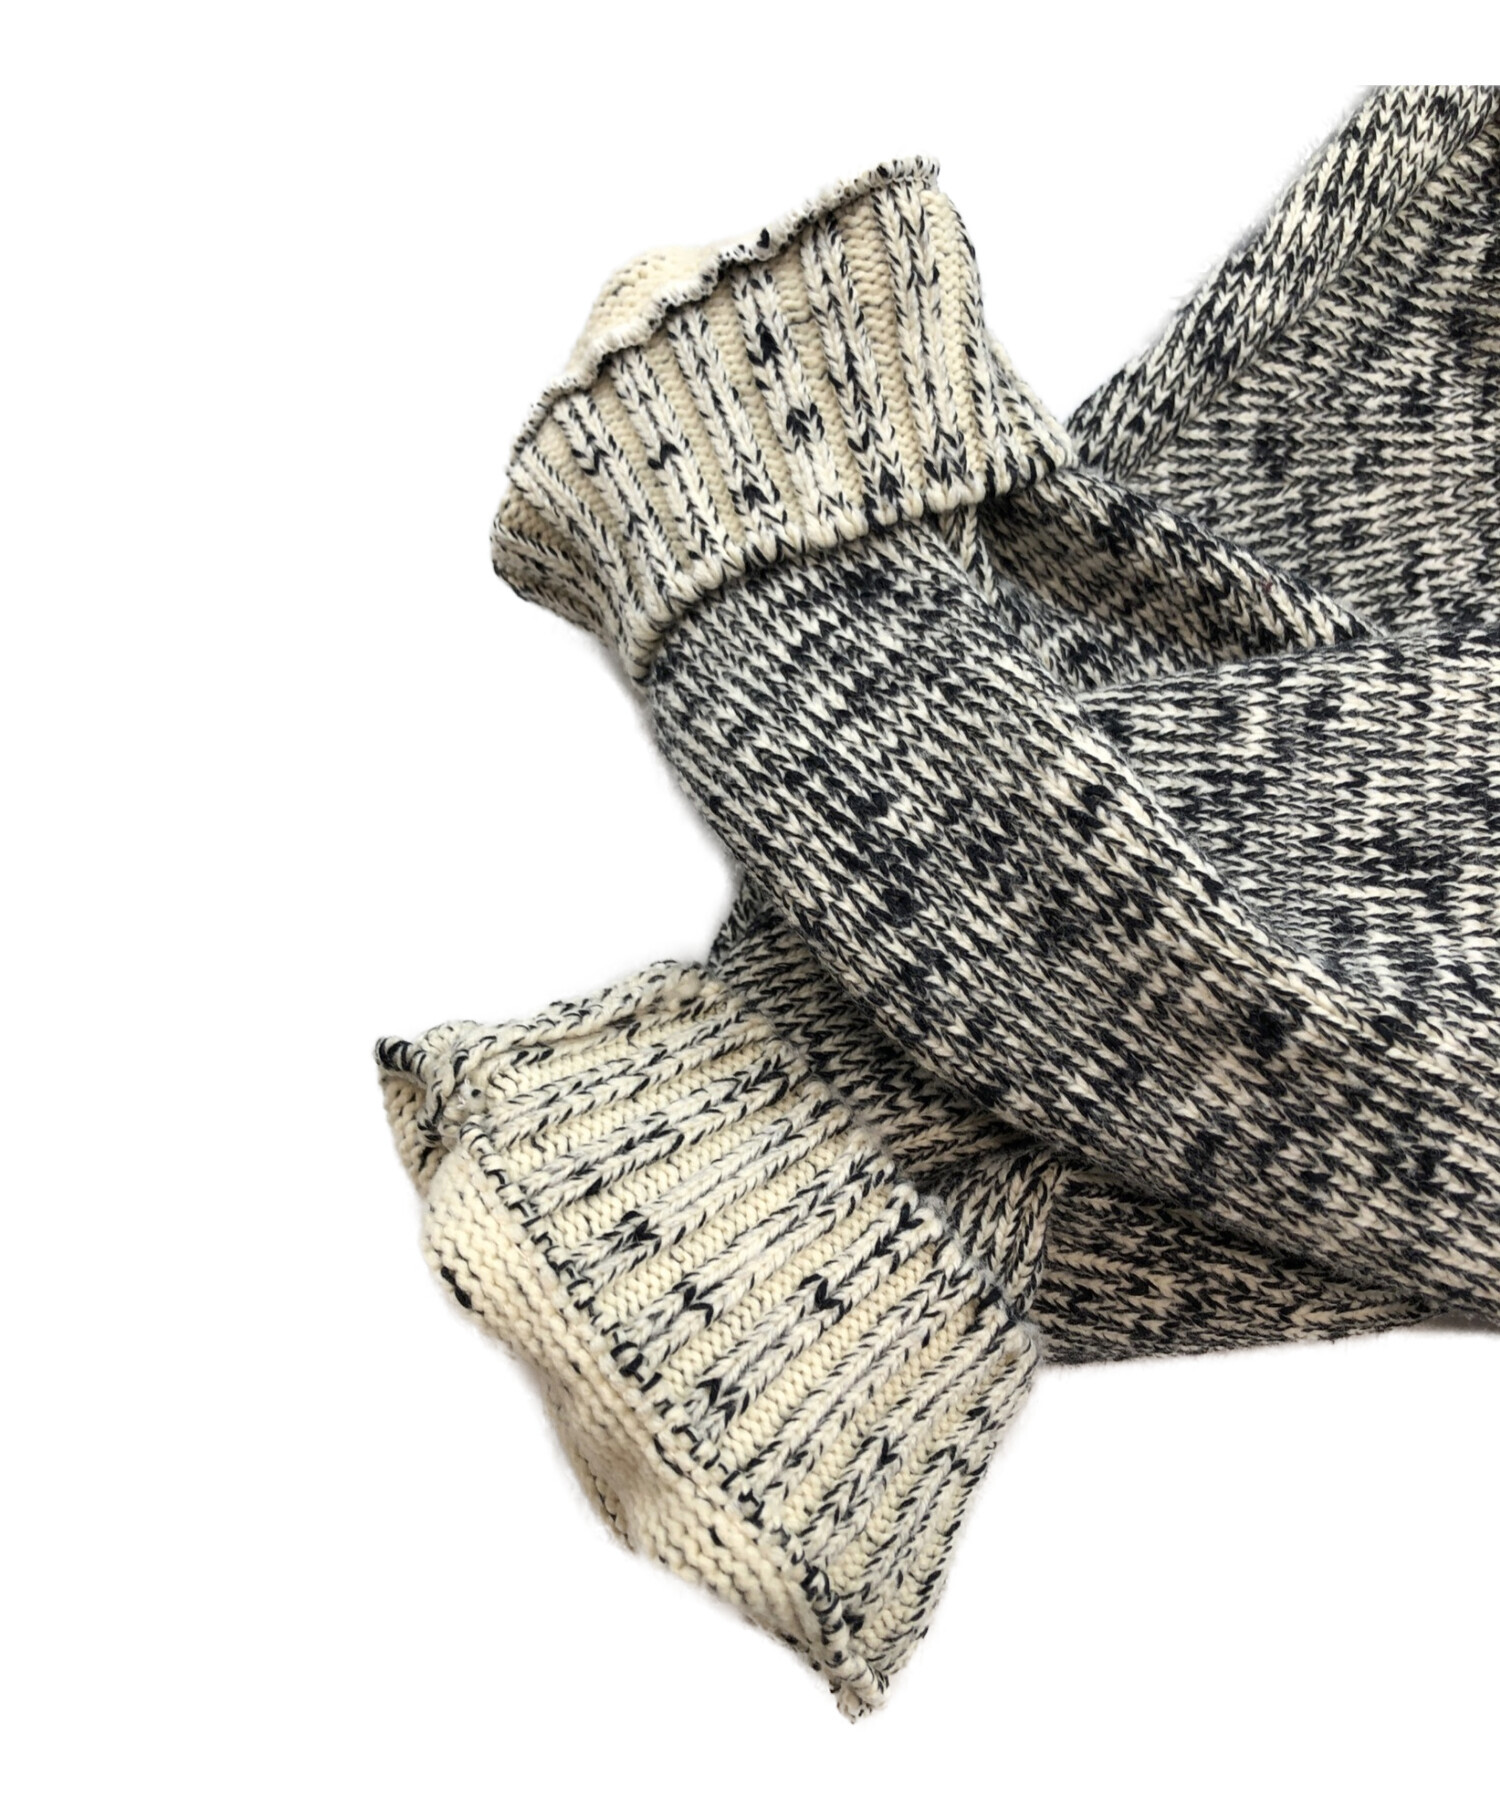 08sircus (ゼロエイトサーカス) Wool Cotton melange dolman sweater/ウール コットン メランジ ドルマン  セーター ブラック×アイボリー サイズ:SIZE 5